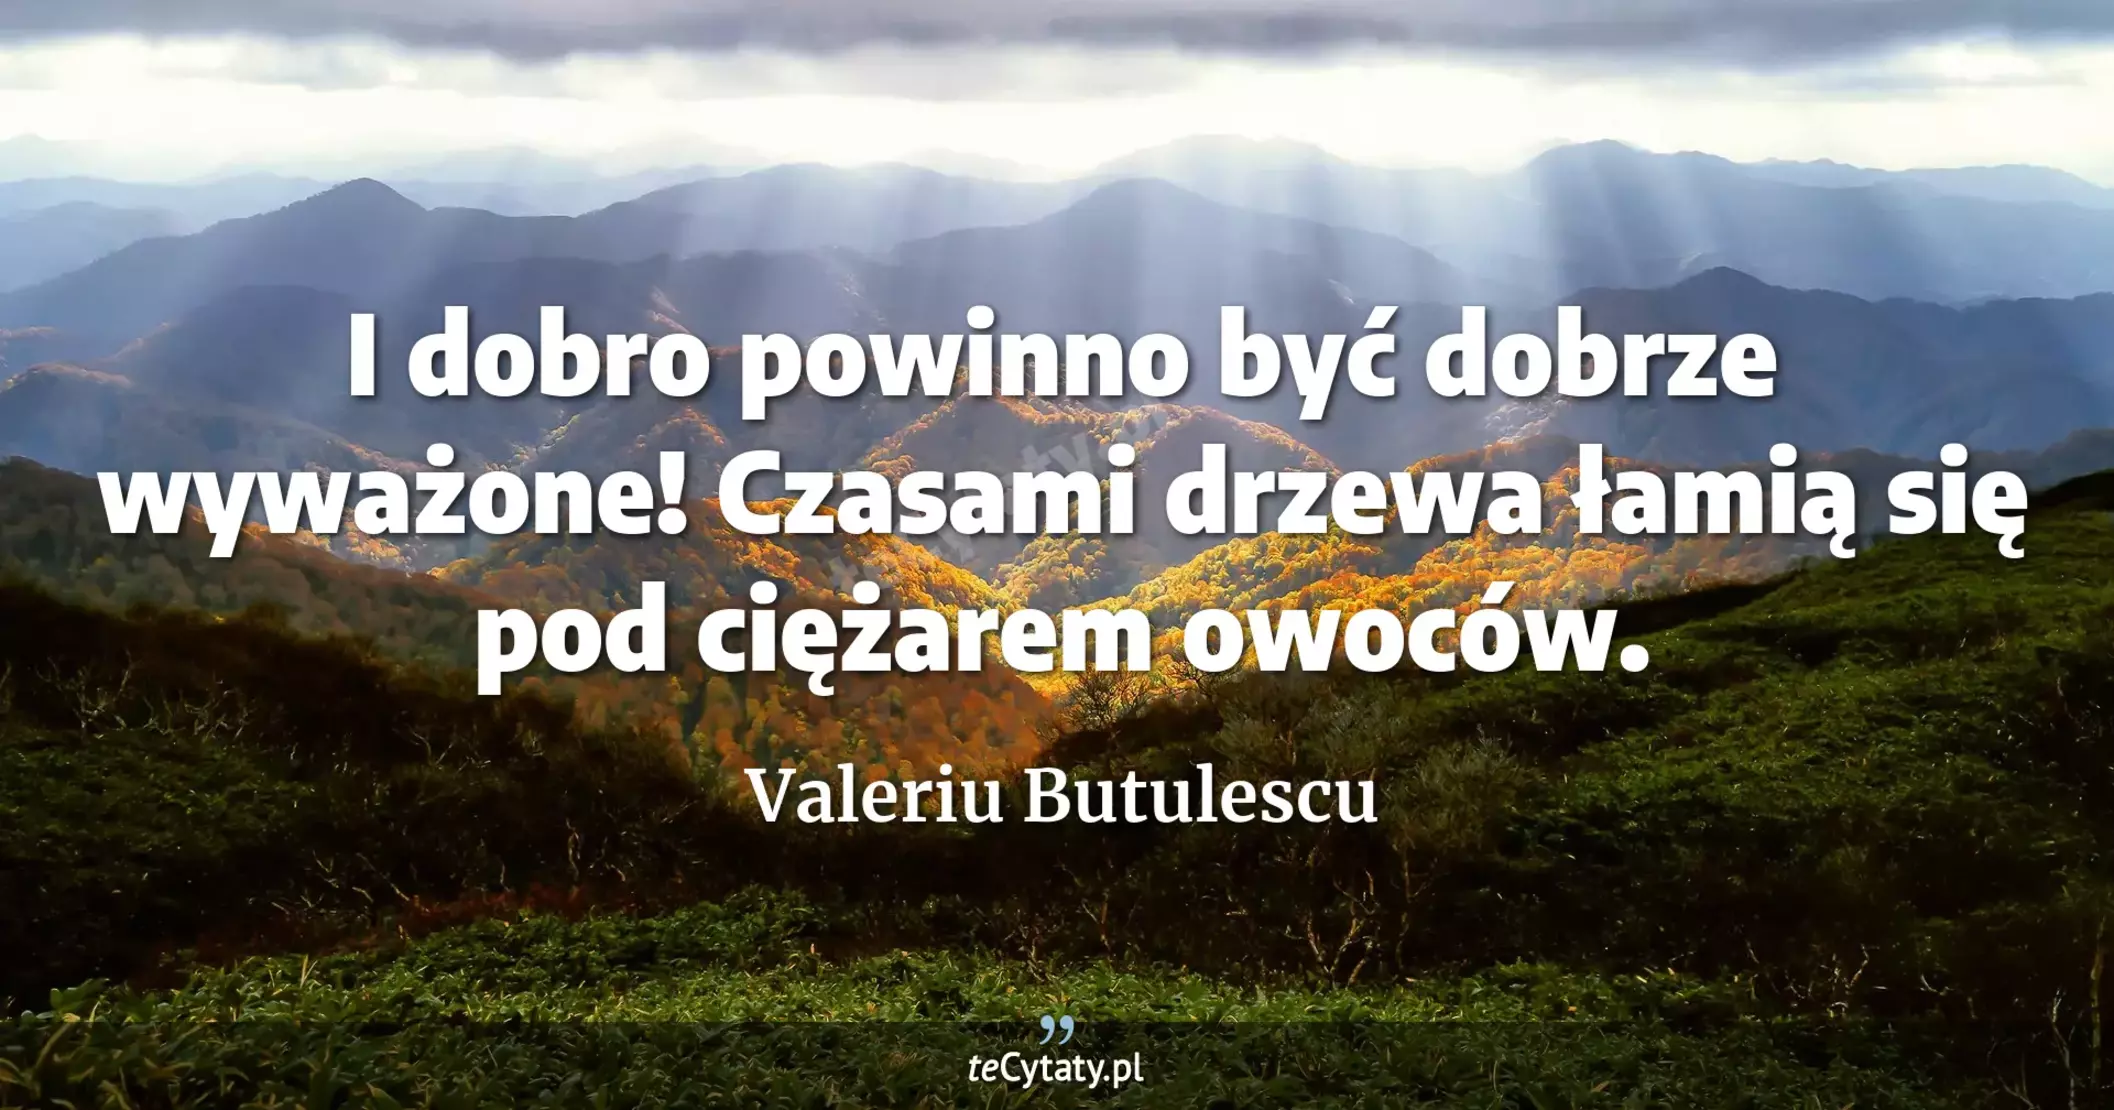 I dobro powinno być dobrze wyważone! Czasami drzewa łamią się pod ciężarem owoców. - Valeriu Butulescu